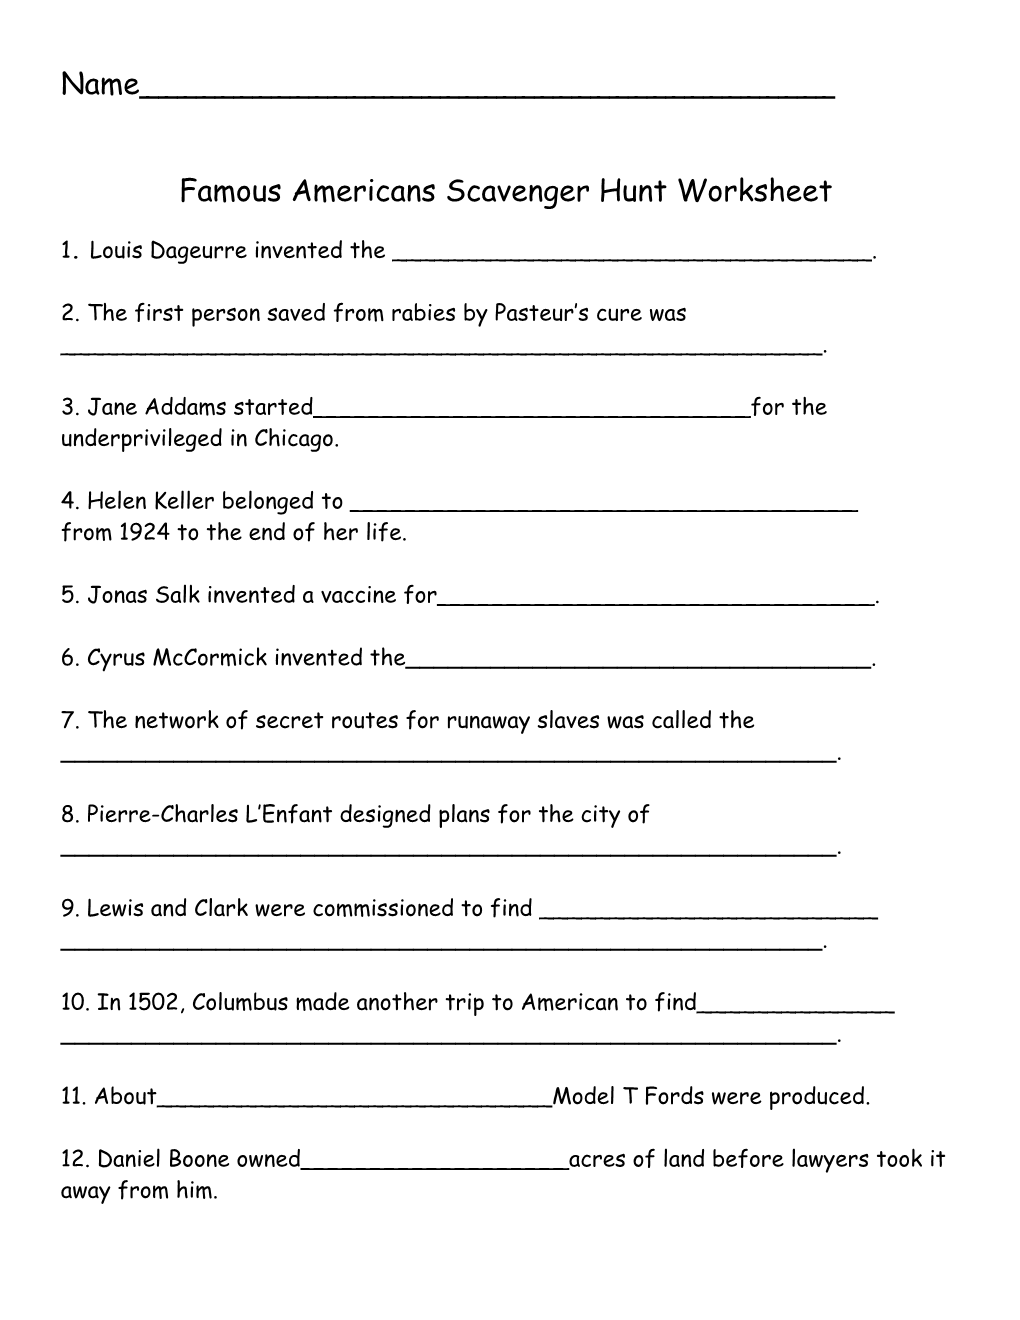 Famous Americans Scavenger Hunt Worksheet